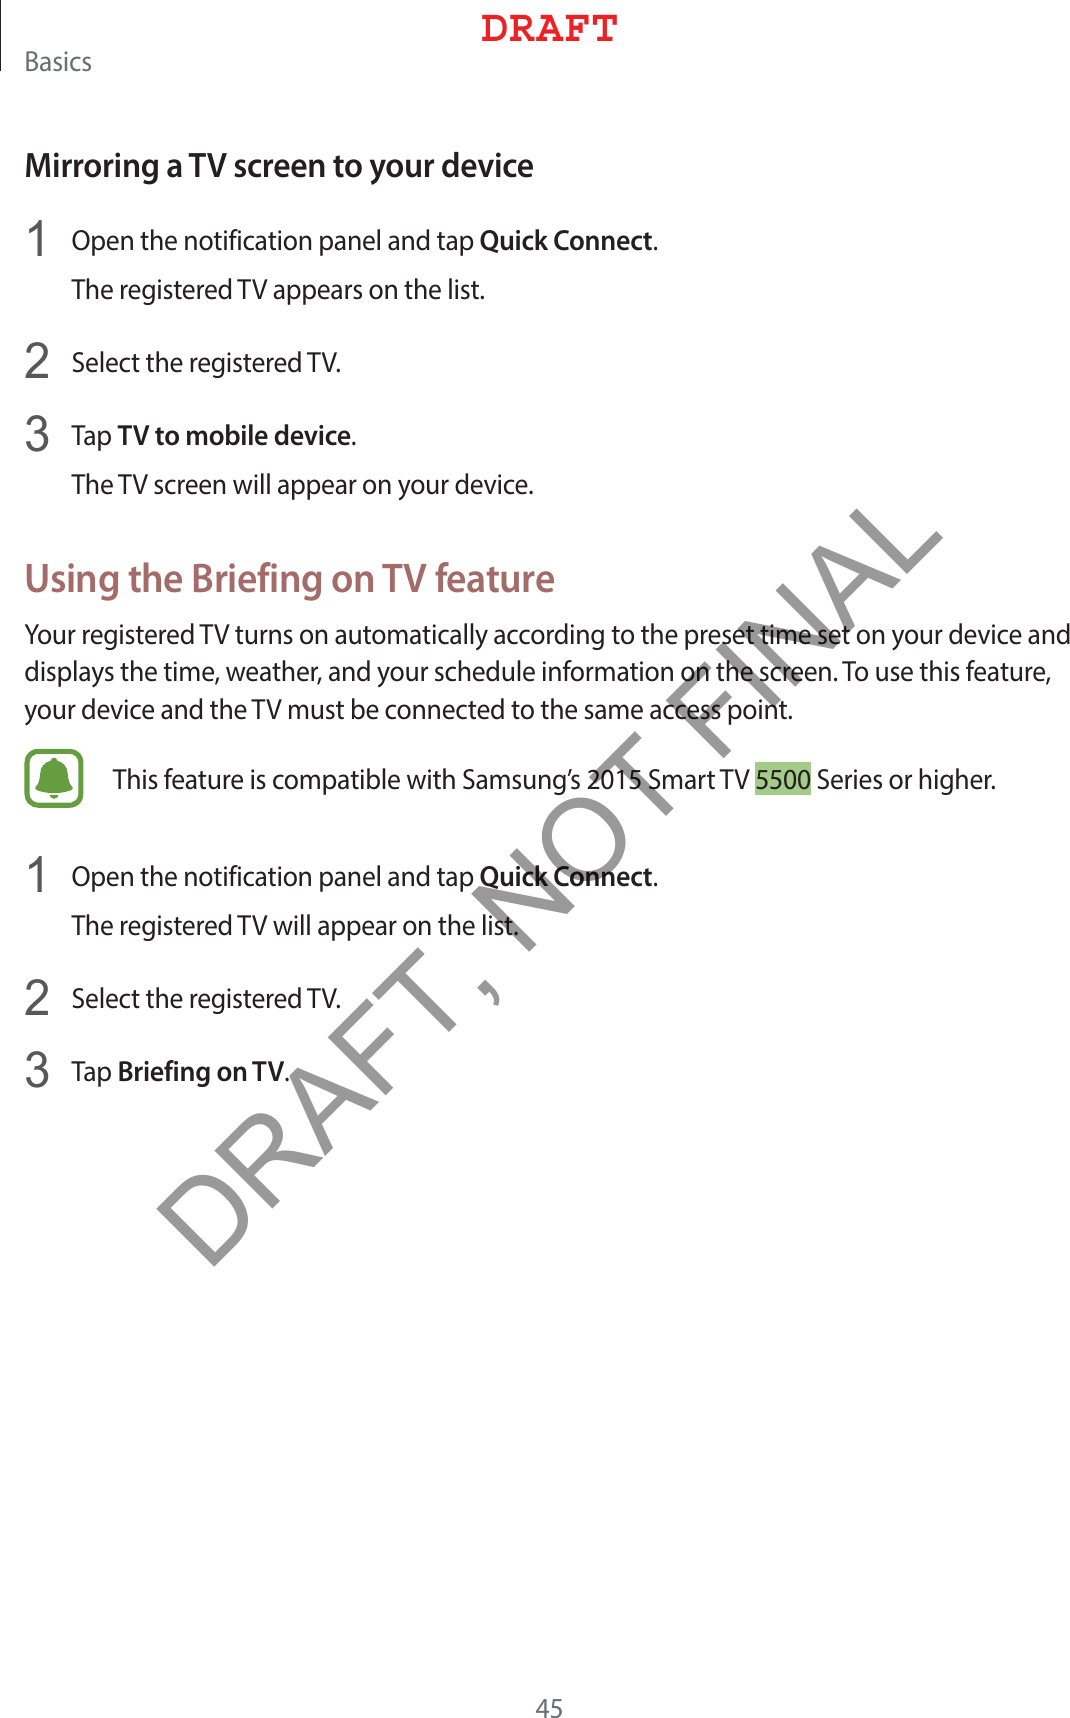 #BTJDTMirroring a TV screen to your device 0QFOUIFOPUJGJDBUJPOQBOFMBOEUBQQuick Connect5IFSFHJTUFSFE57BQQFBSTPOUIFMJTU 4FMFDUUIFSFHJTUFSFE57 5BQTV to mobile device5IF57TDSFFOXJMMBQQFBSPOZPVSEFWJDFUsing the Briefing on TV feature:PVSSFHJTUFSFE57UVSOTPOBVUPNBUJDBMMZBDDPSEJOHUPUIFQSFTFUUJNFTFUPOZPVSEFWJDFBOEEJTQMBZTUIFUJNFXFBUIFSBOEZPVSTDIFEVMFJOGPSNBUJPOPOUIFTDSFFO5PVTFUIJTGFBUVSFZPVSEFWJDFBOEUIF57NVTUCFDPOOFDUFEUPUIFTBNFBDDFTTQPJOU5IJTGFBUVSFJTDPNQBUJCMFXJUI4BNTVOHT4NBSU574FSJFTPSIJHIFS 0QFOUIFOPUJGJDBUJPOQBOFMBOEUBQQuick Connect5IFSFHJTUFSFE57XJMMBQQFBSPOUIFMJTU 4FMFDUUIFSFHJTUFSFE57 5BQBriefing on TV%3&quot;&apos;5DRAFT, NOT FINAL